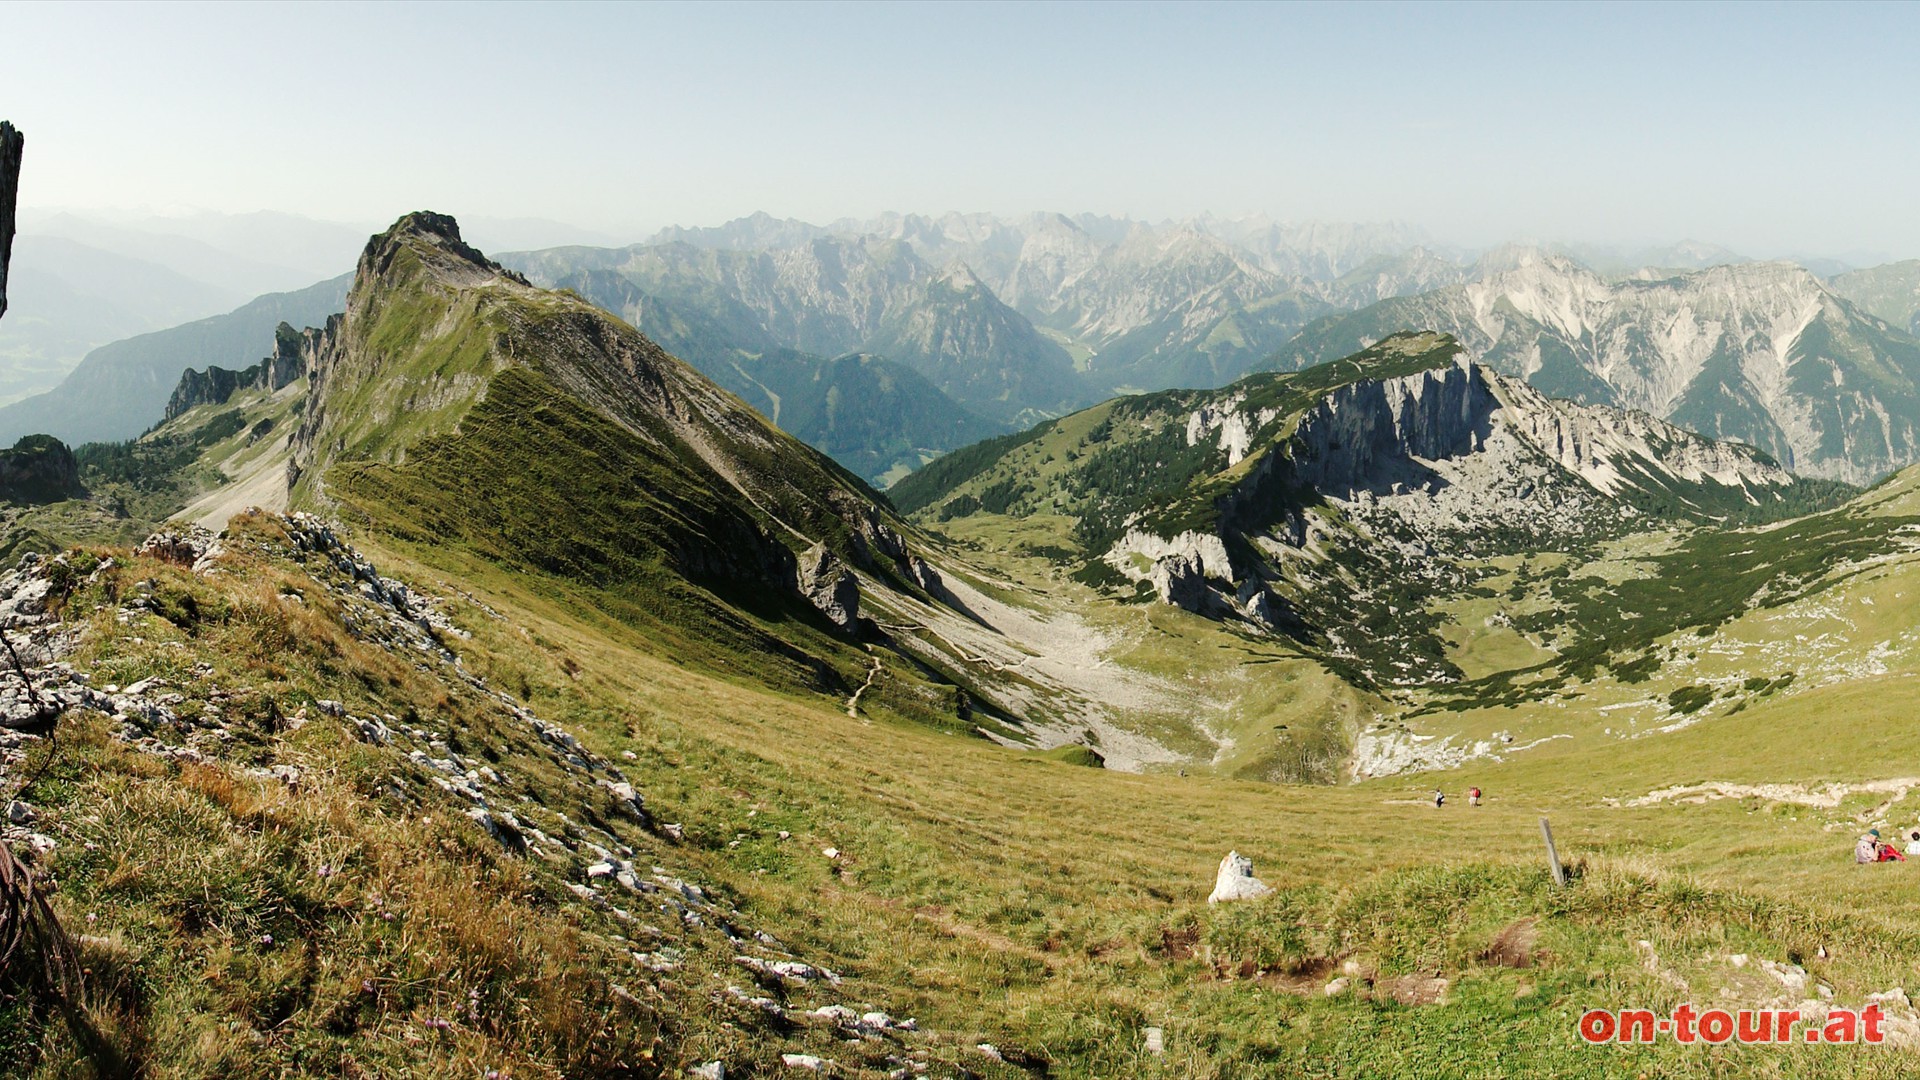 Streichkopfgatterl. Links erhebt sich der Dalfazer Kamm, rechts die Klobenjochspitze und dahinter das Karwendlgebirge.